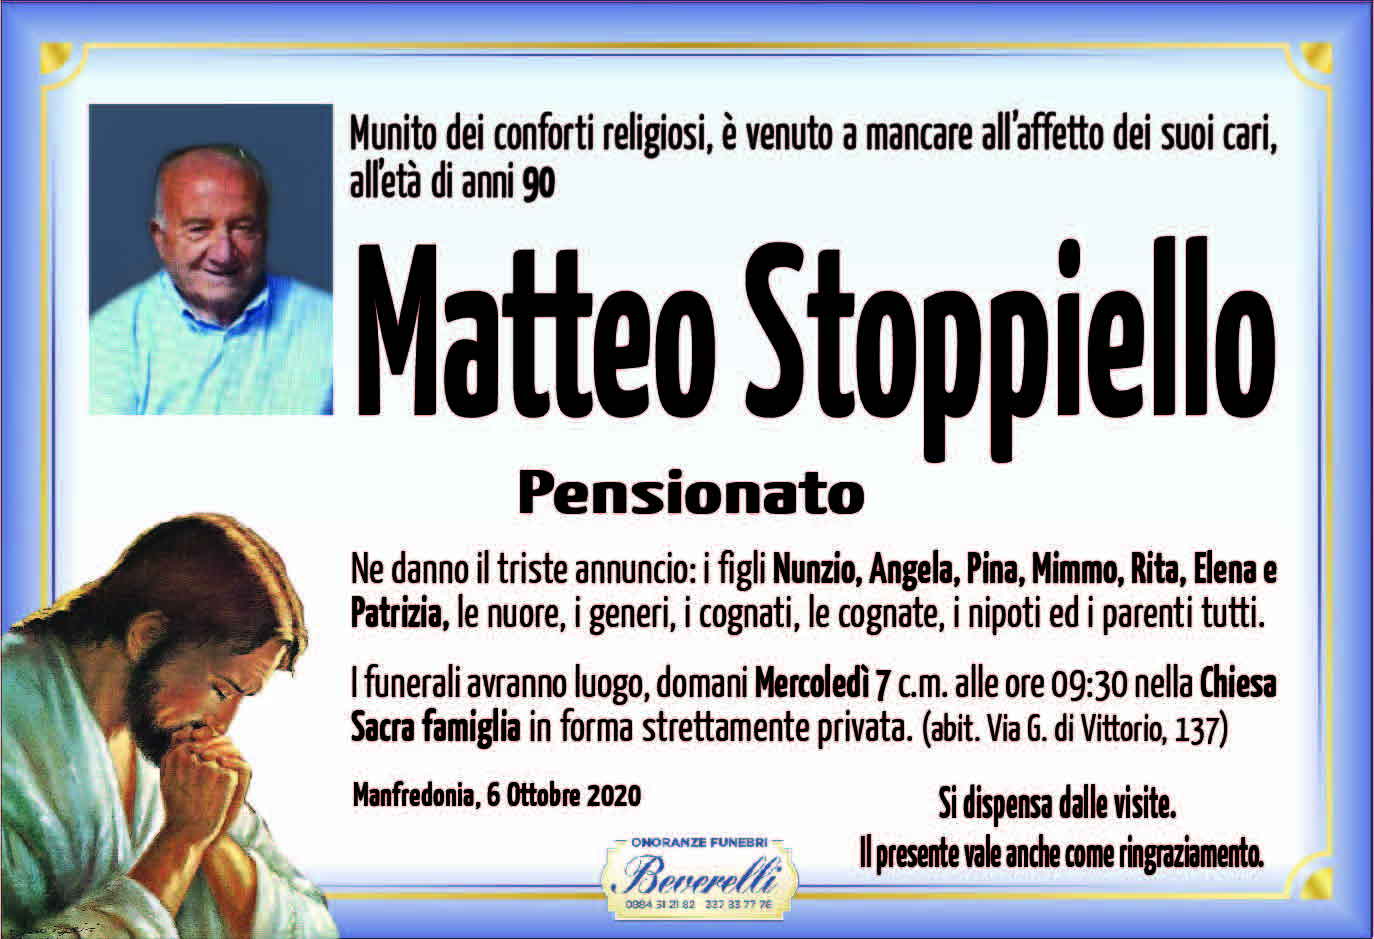 Matteo Stoppiello